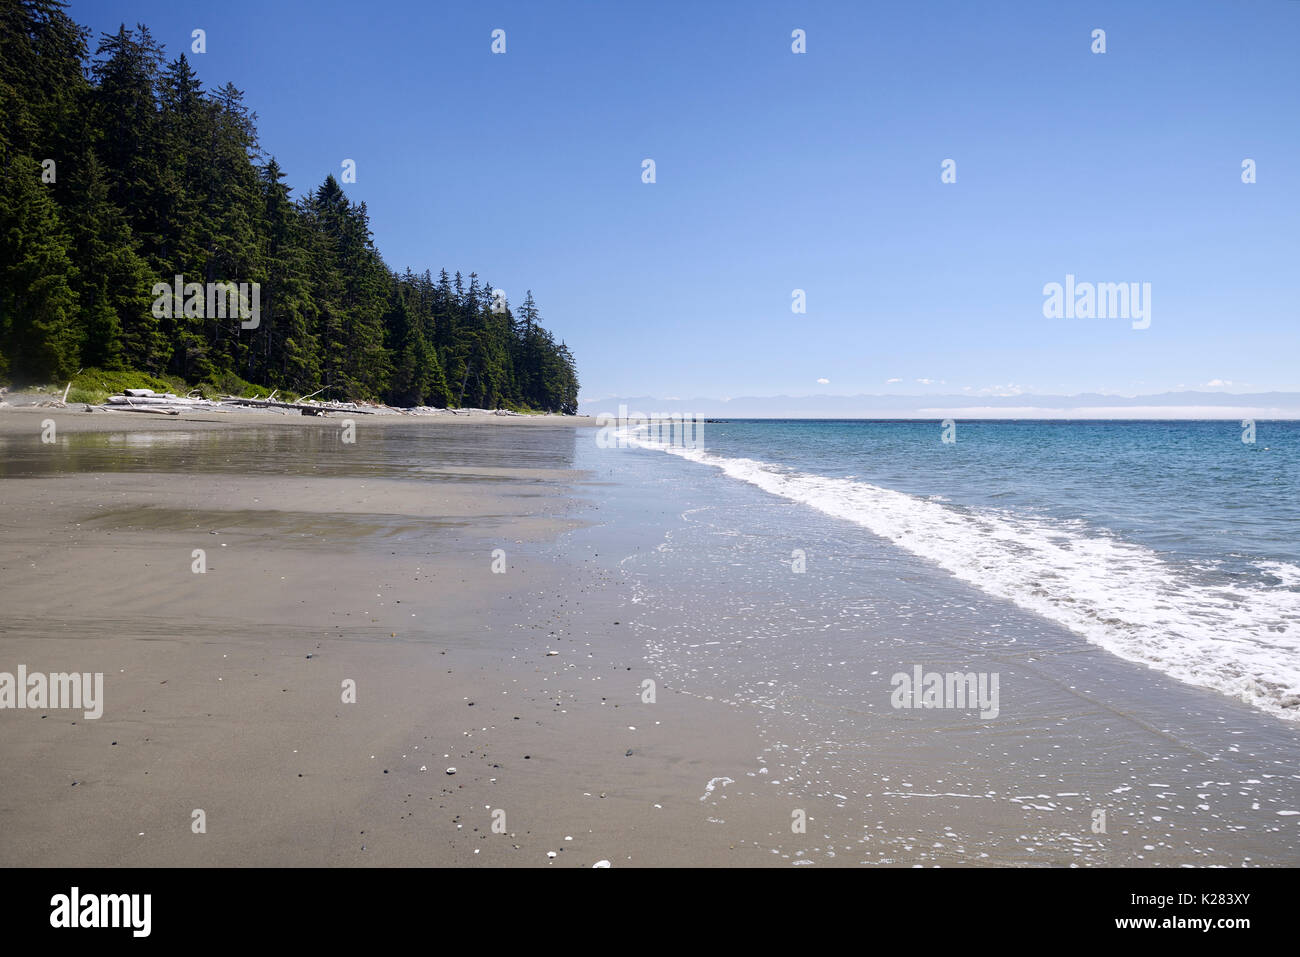 Las costas arenosas playa China en verano, místico paisaje de Playa, Parque Provincial Juan de Fuca escenografía, Port Renfrew, costa sur de la isla de Vancouver, Briti Foto de stock